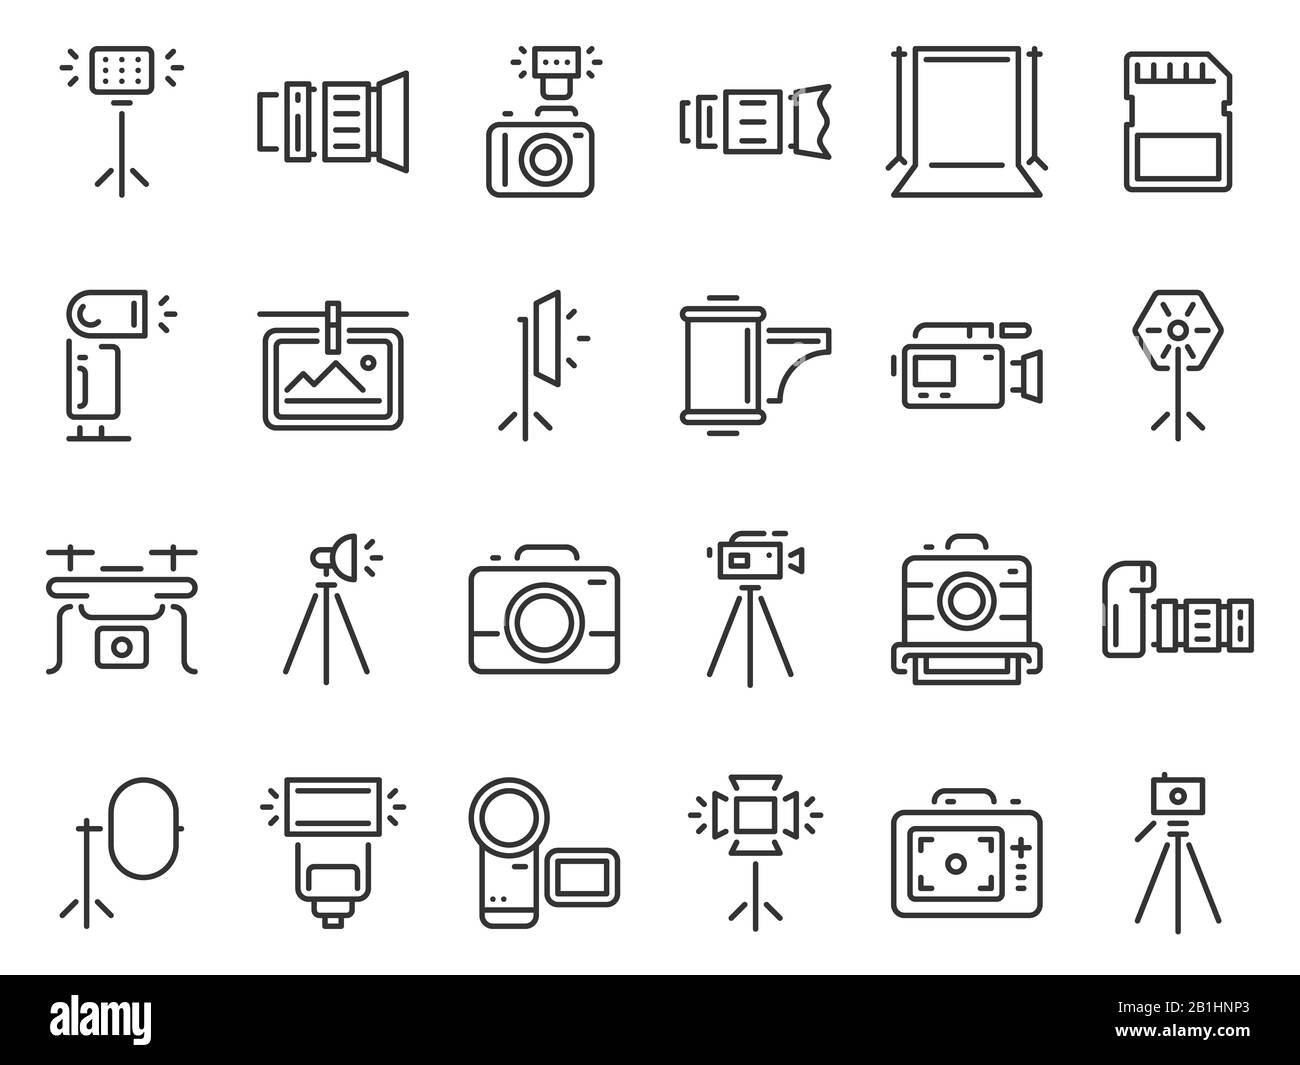 Icone delle foto. Set di icone vettoriali per fotografia in studio, fotocamere e fotocamere su treppiede Illustrazione Vettoriale